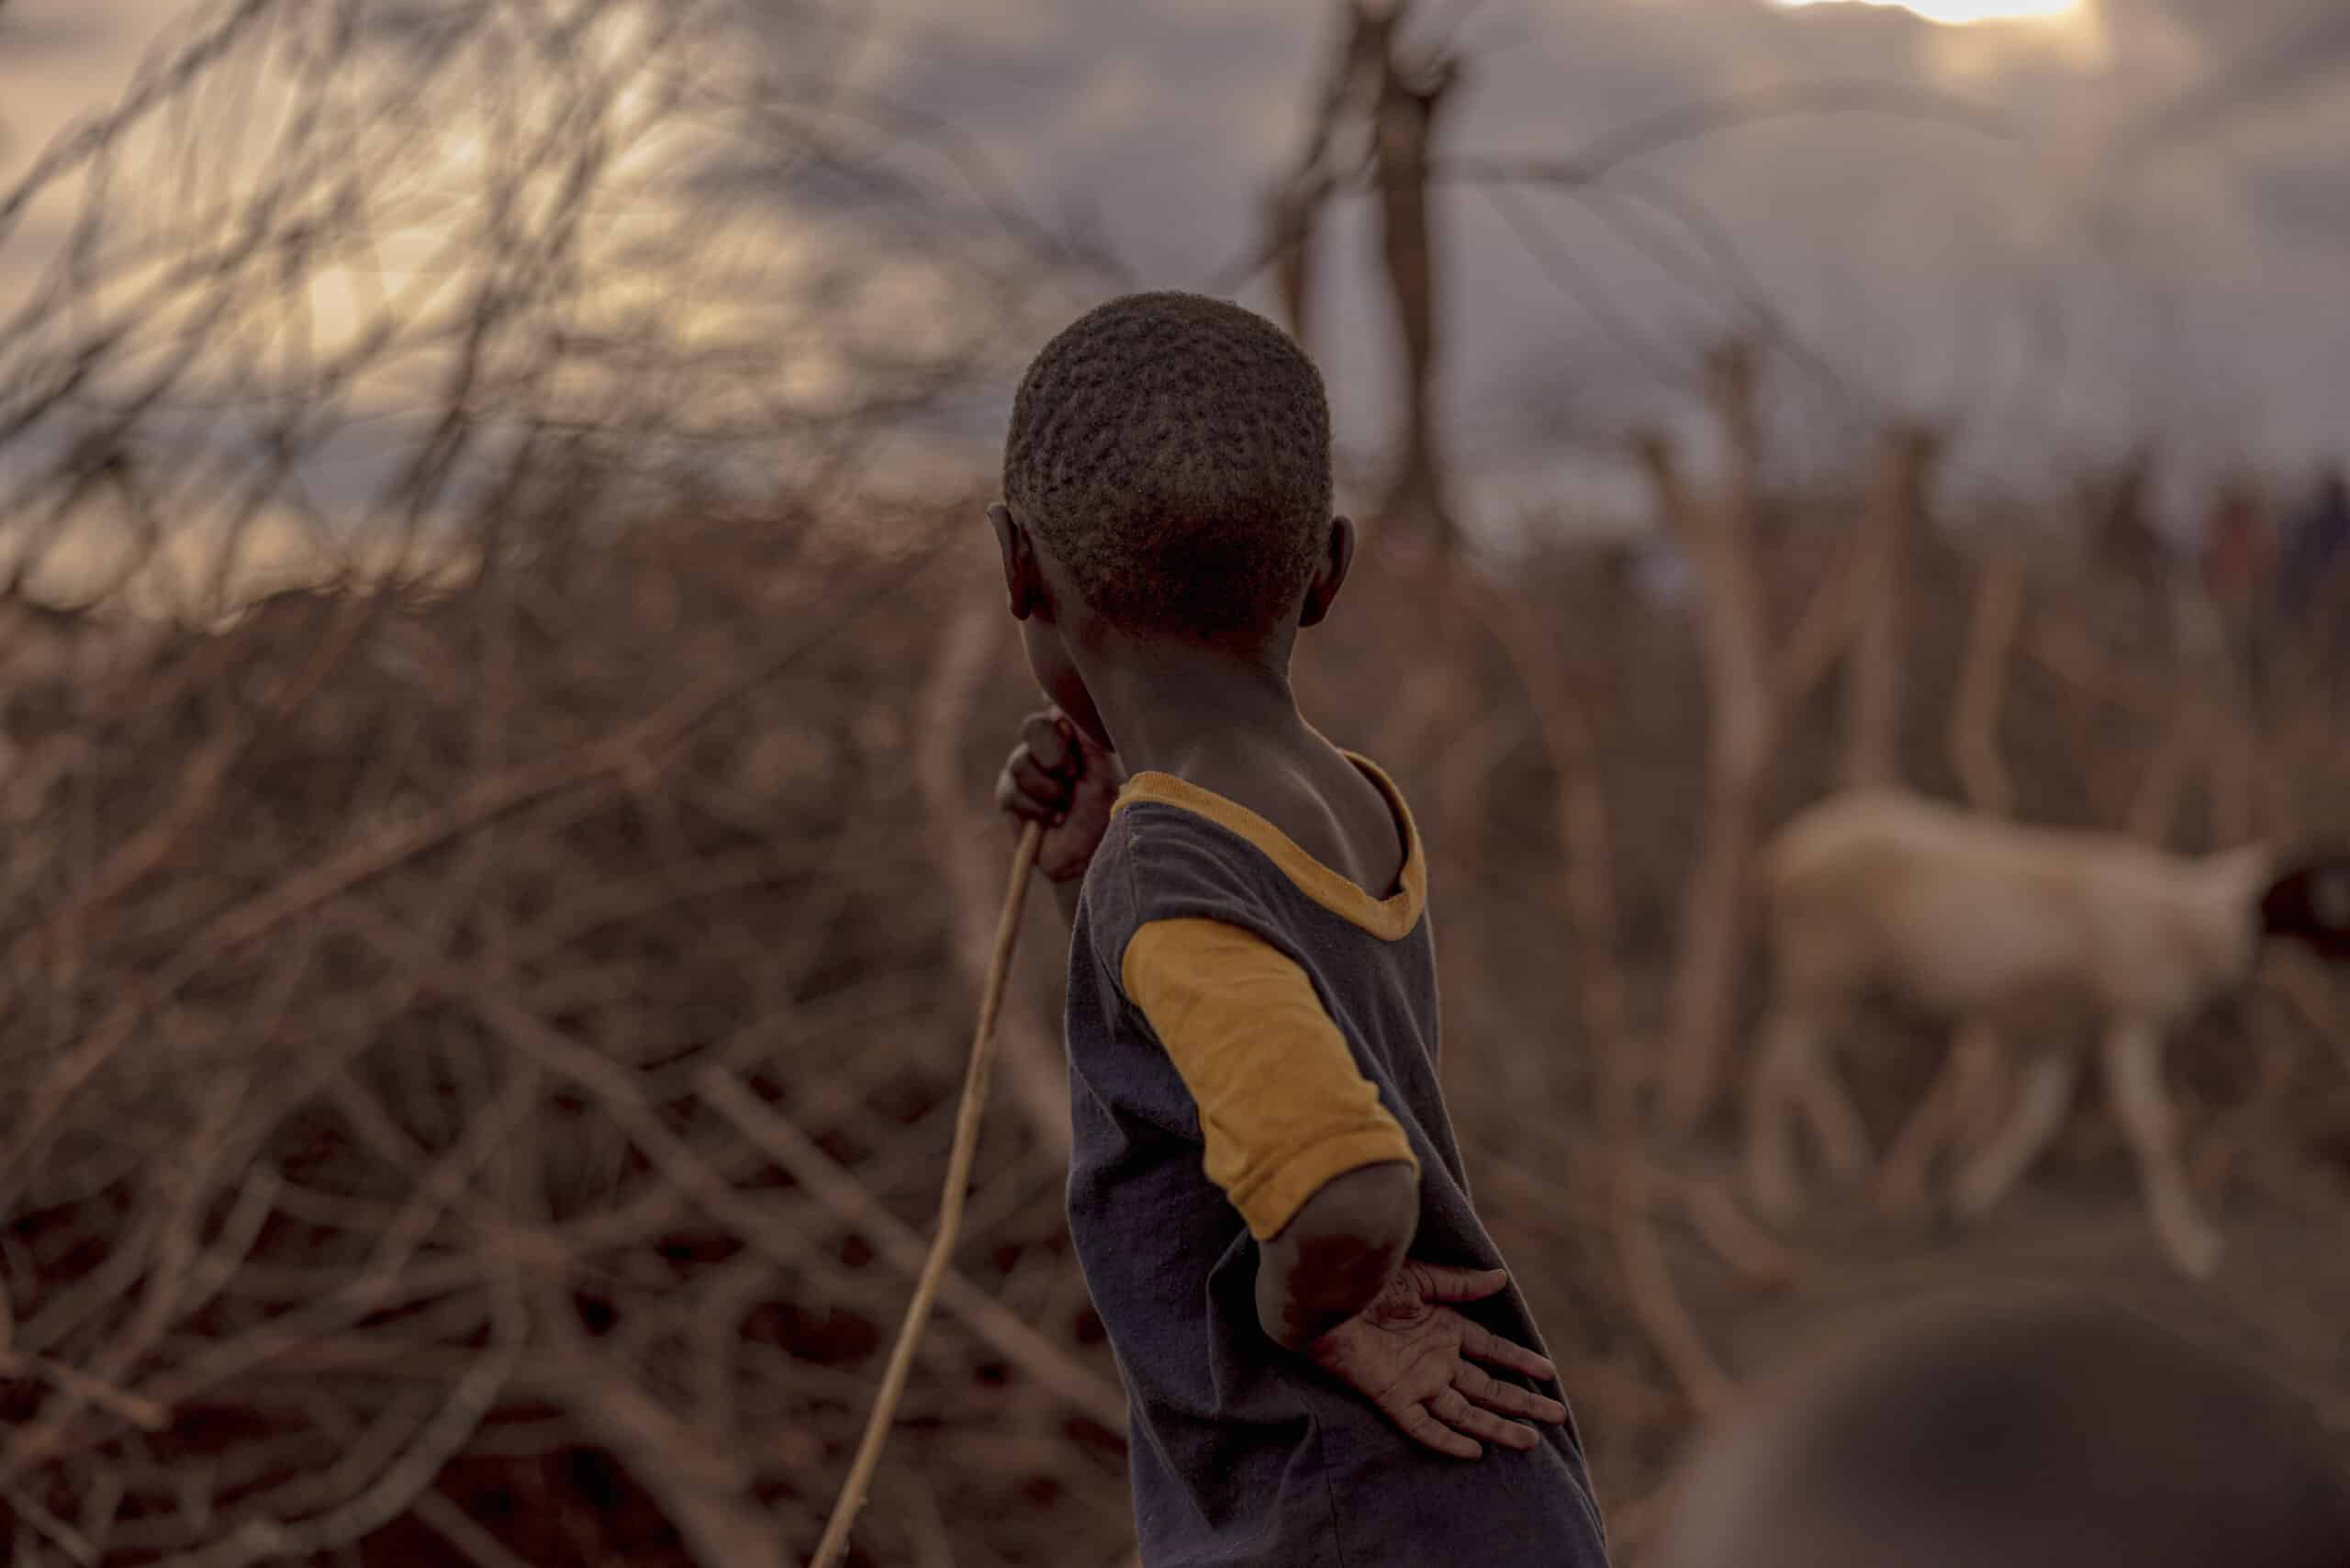 Ein kleines Kind von hinten, das in einer trockenen Landschaft mit spärlicher Vegetation steht und in Richtung einer Ziege blickt. Das Kind trägt ein blau-gelbes Hemd und hält einen Stock. © Fotografie Tomas Rodriguez